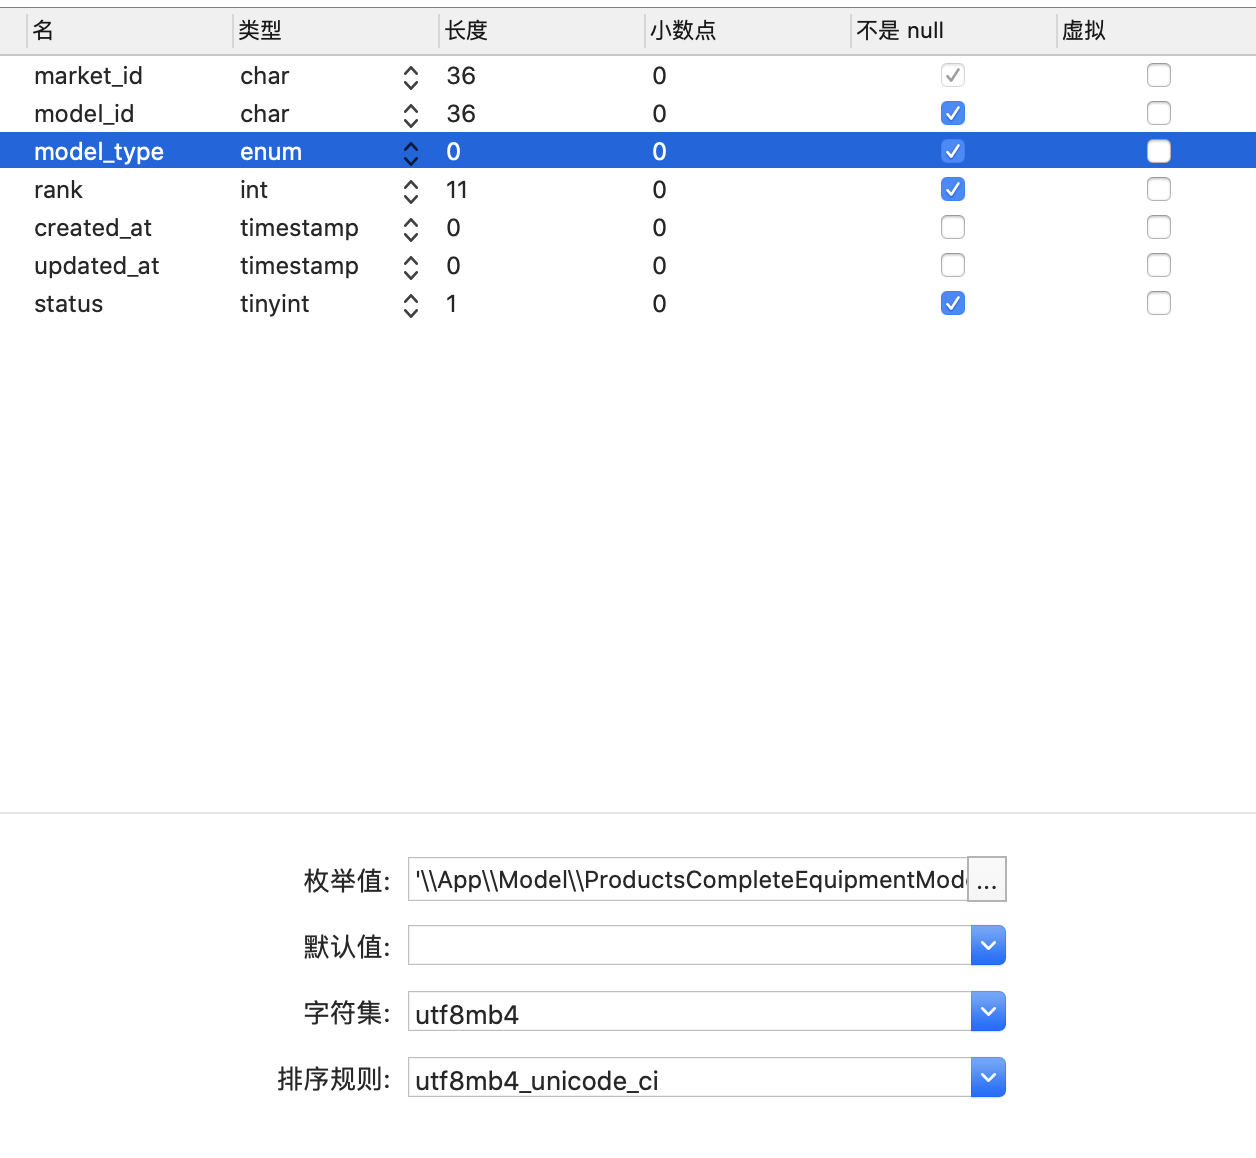 【求助】Laravel 5.8 数据库迁移中，如果字段包含 "\" 反斜杠时，无法正确迁移字段